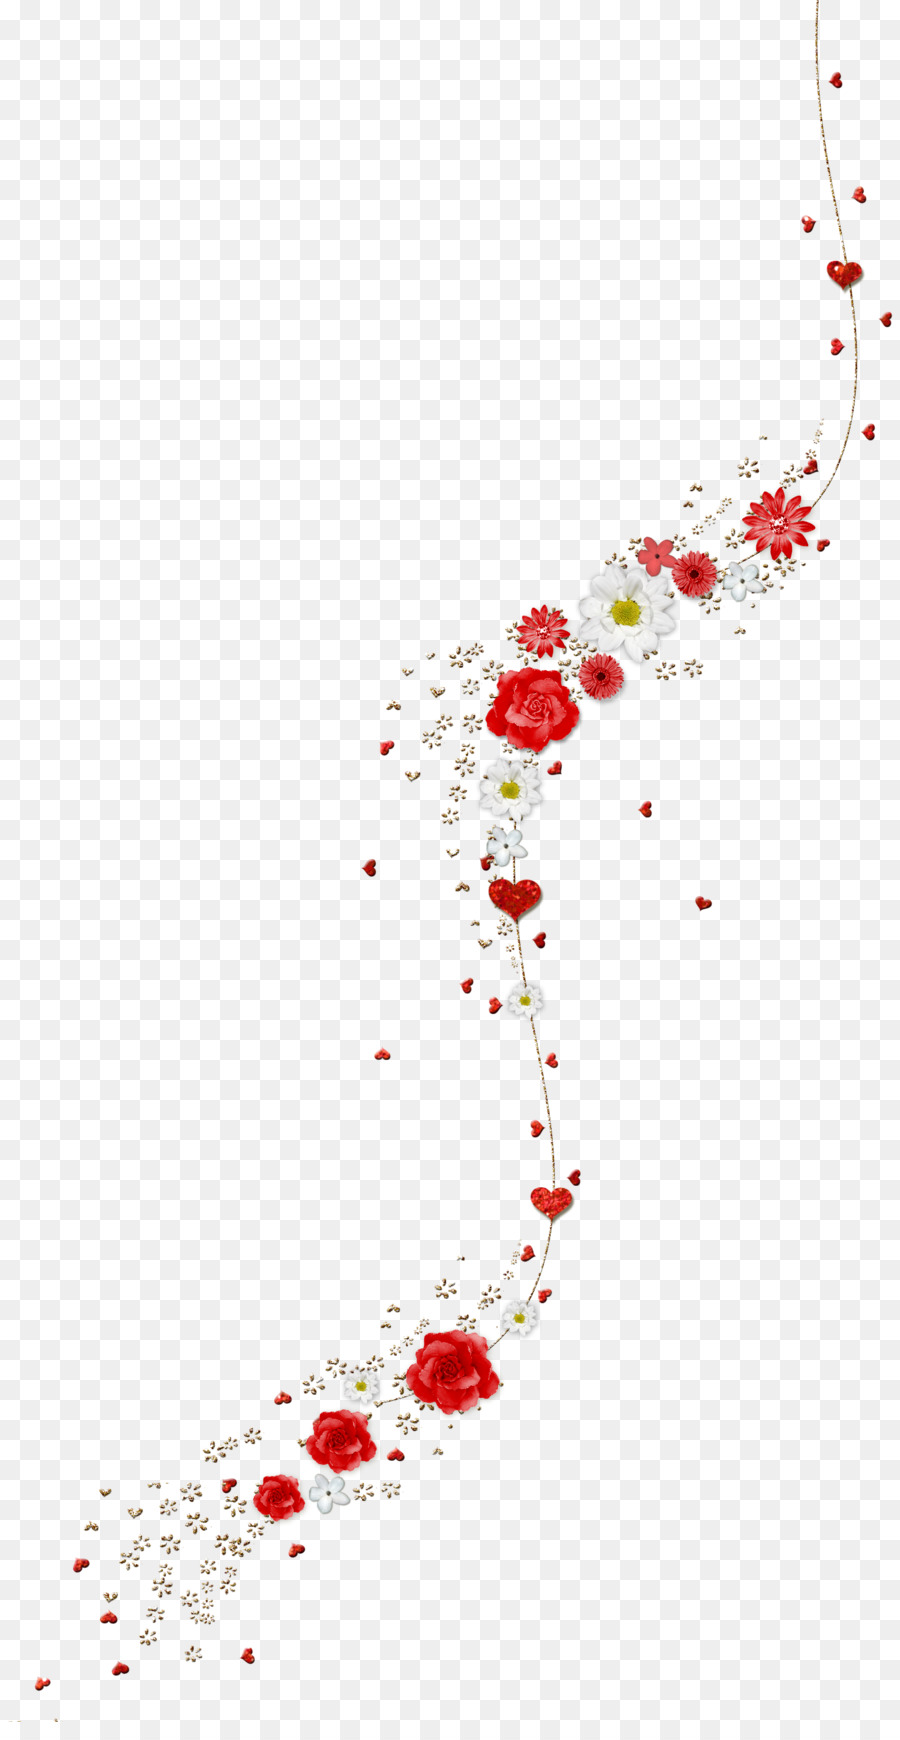 Flower 0 Clip art - sparkle png download - 1881*3600 - Free Transparent Flower png Download.